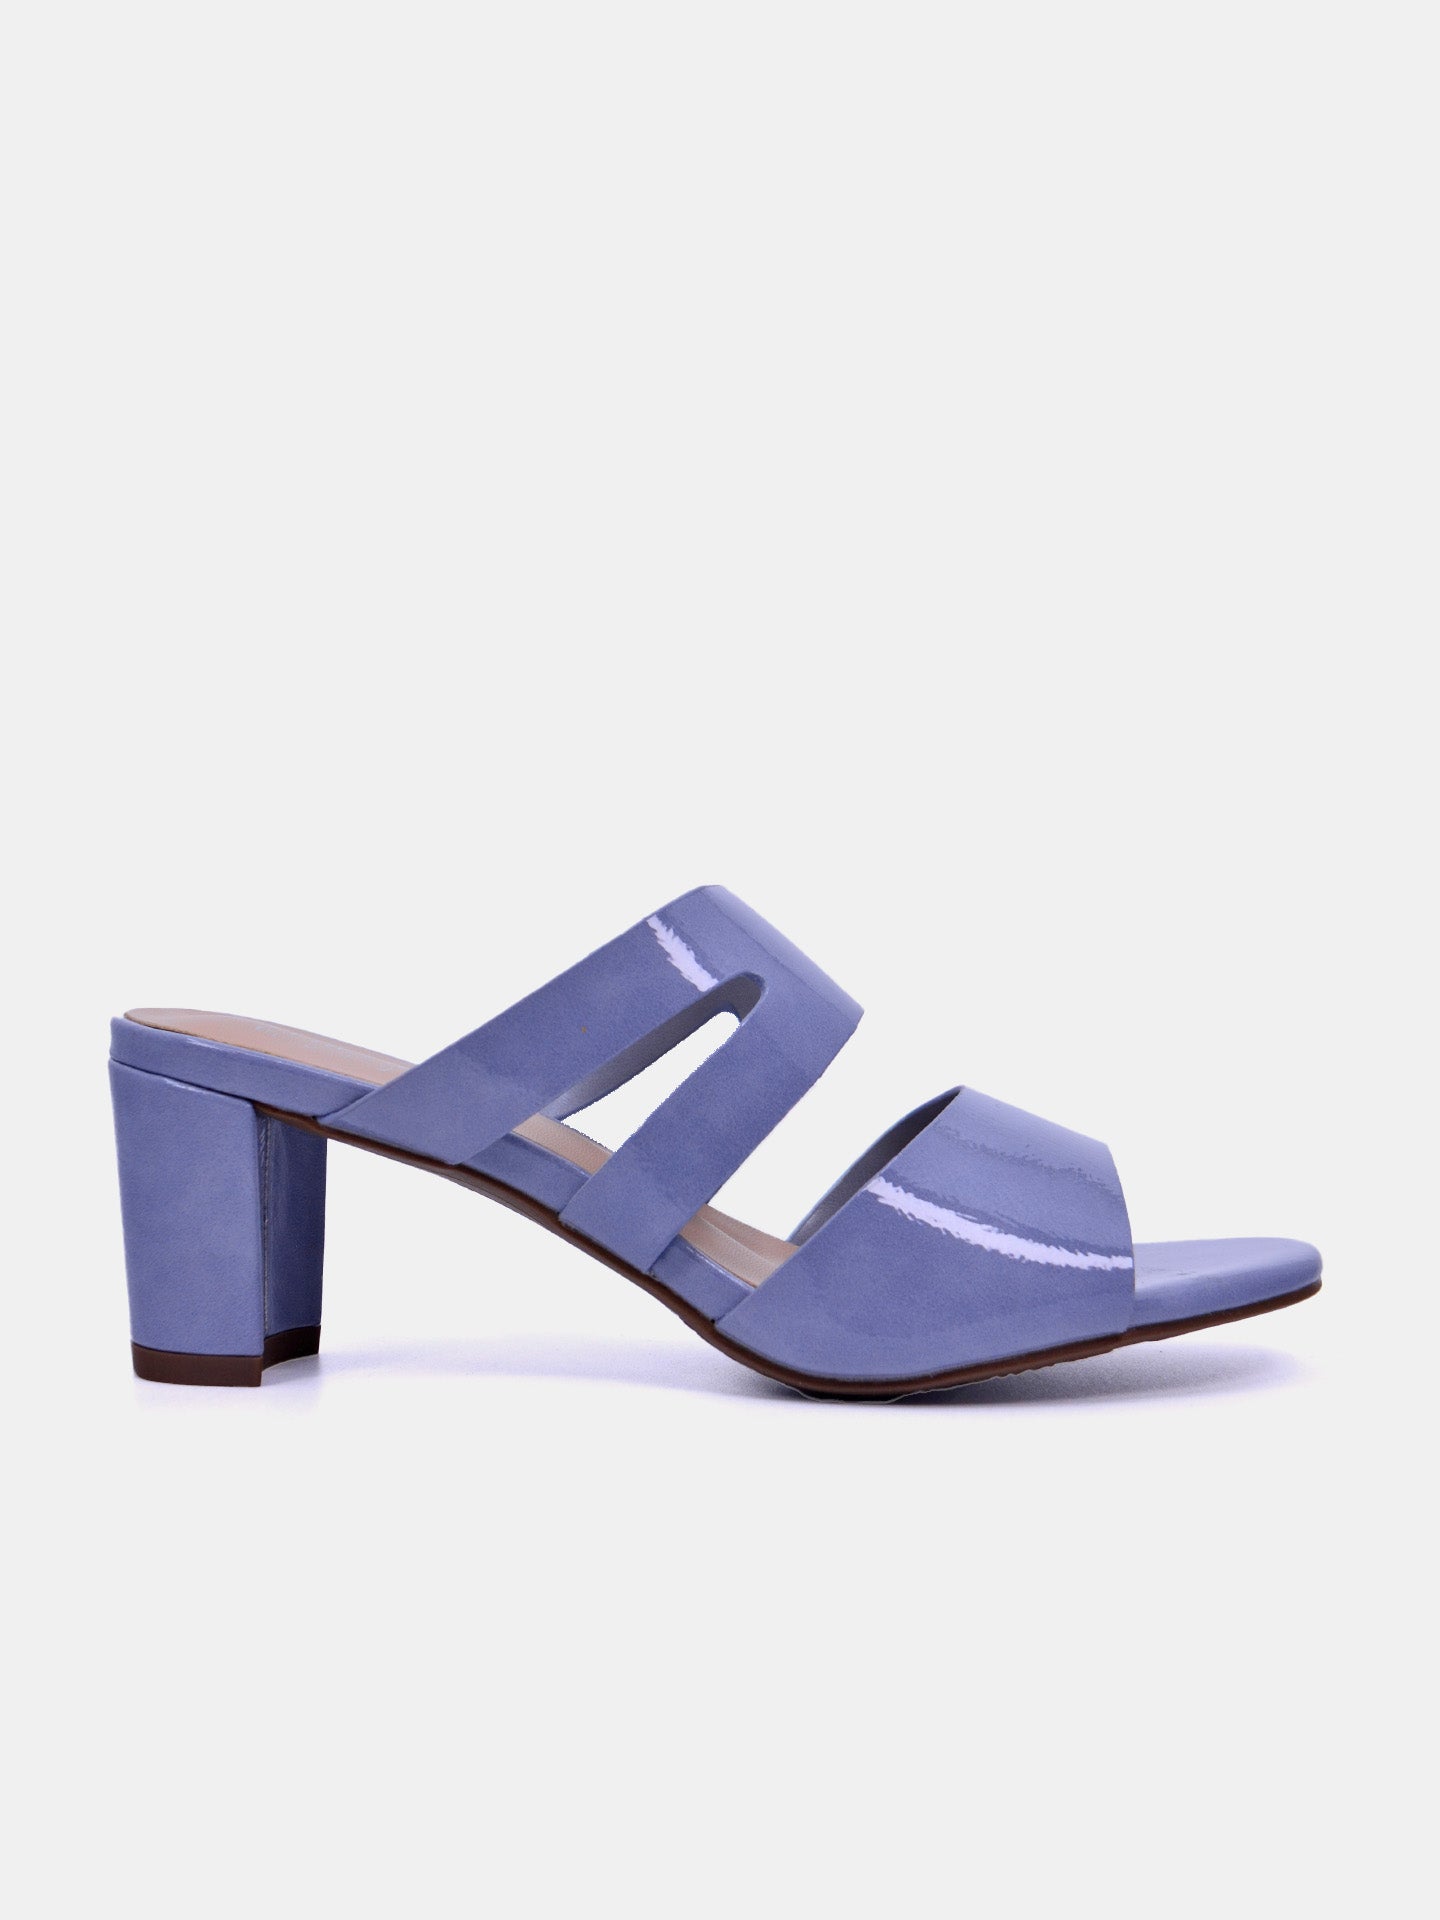 Michelle Morgan 214RC19M Women's Heeled Sandals #color_Blue